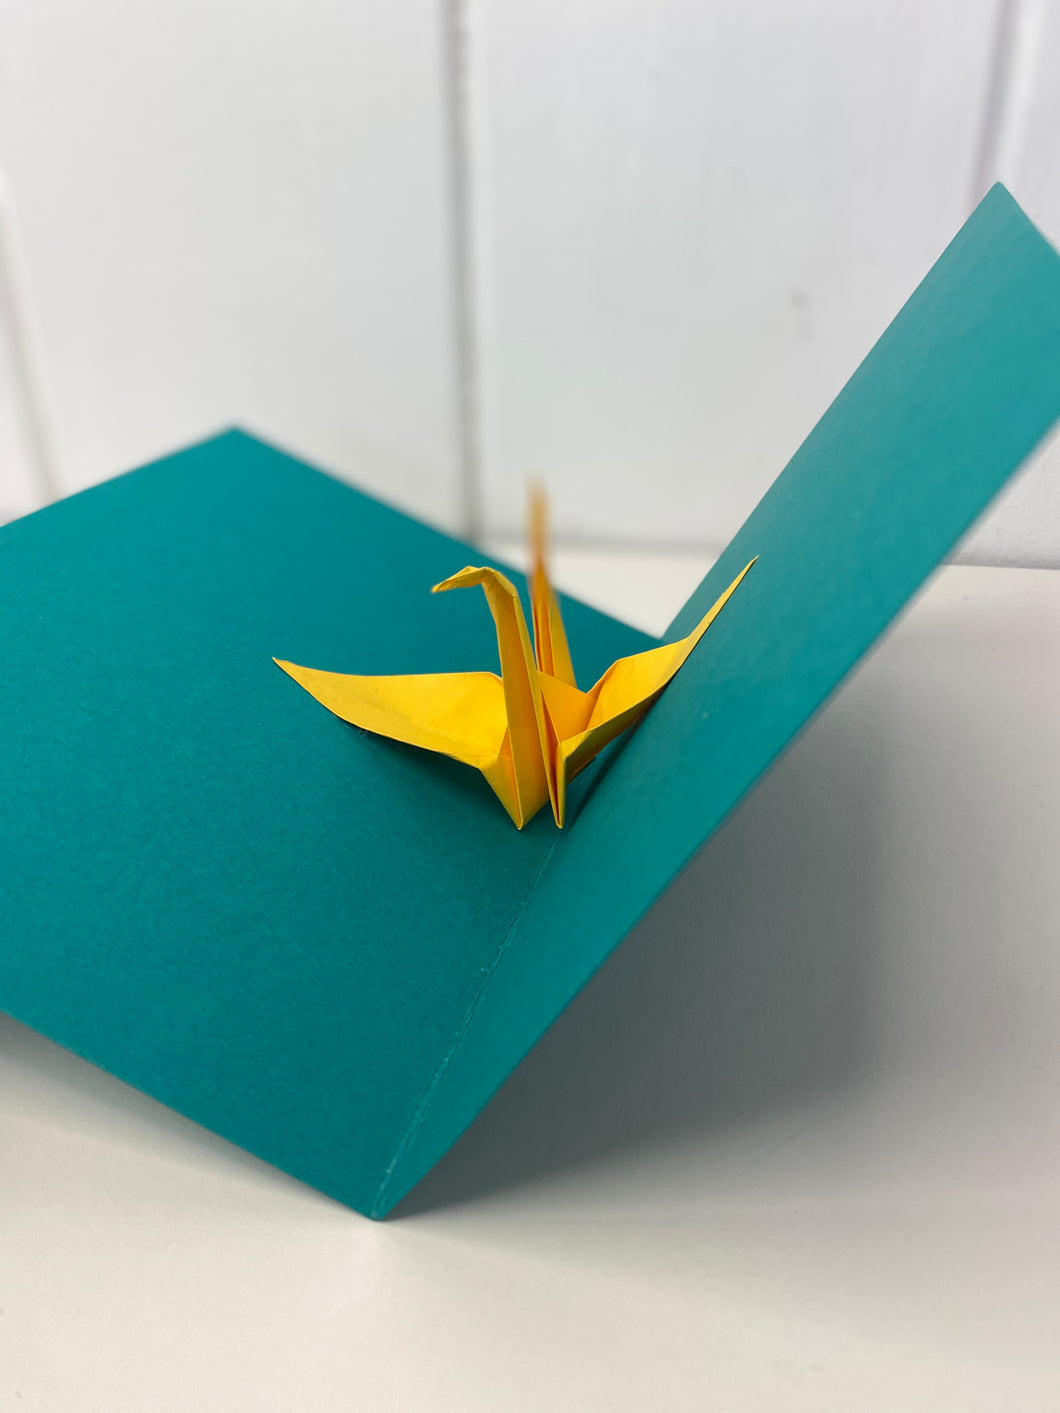 Mini Make: Pop up Origami Crane Card